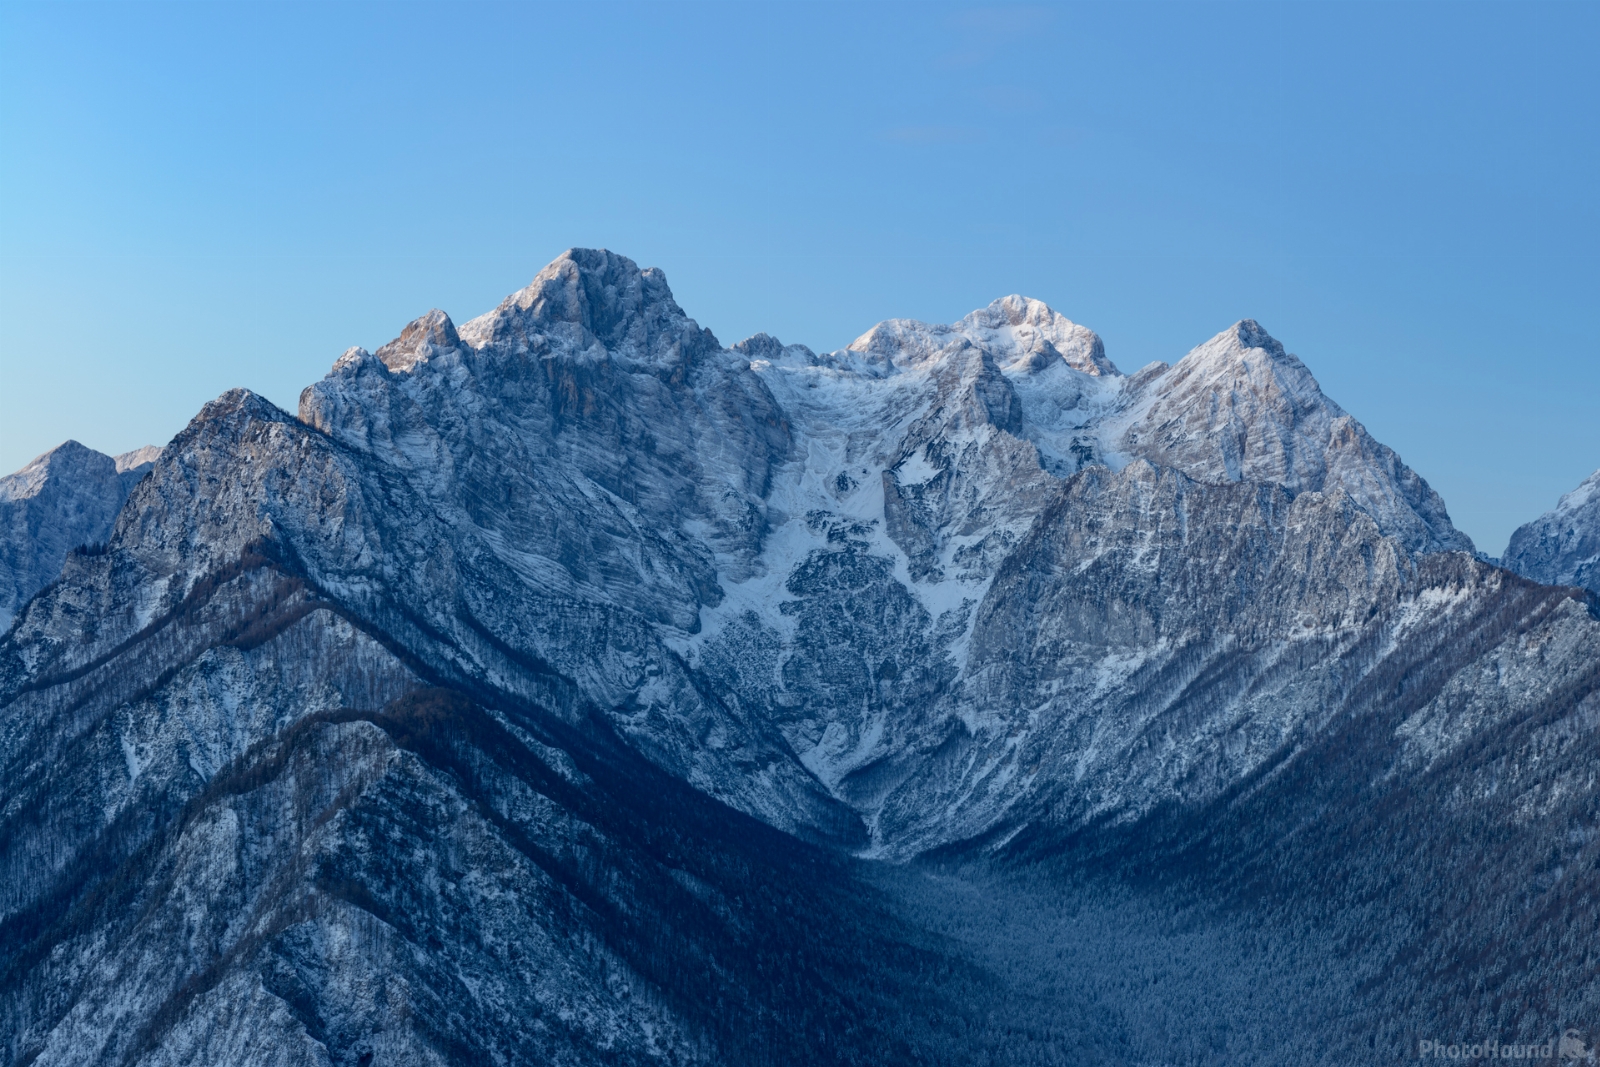 Image of Julian Alps from Jerebikovec by Luka Esenko